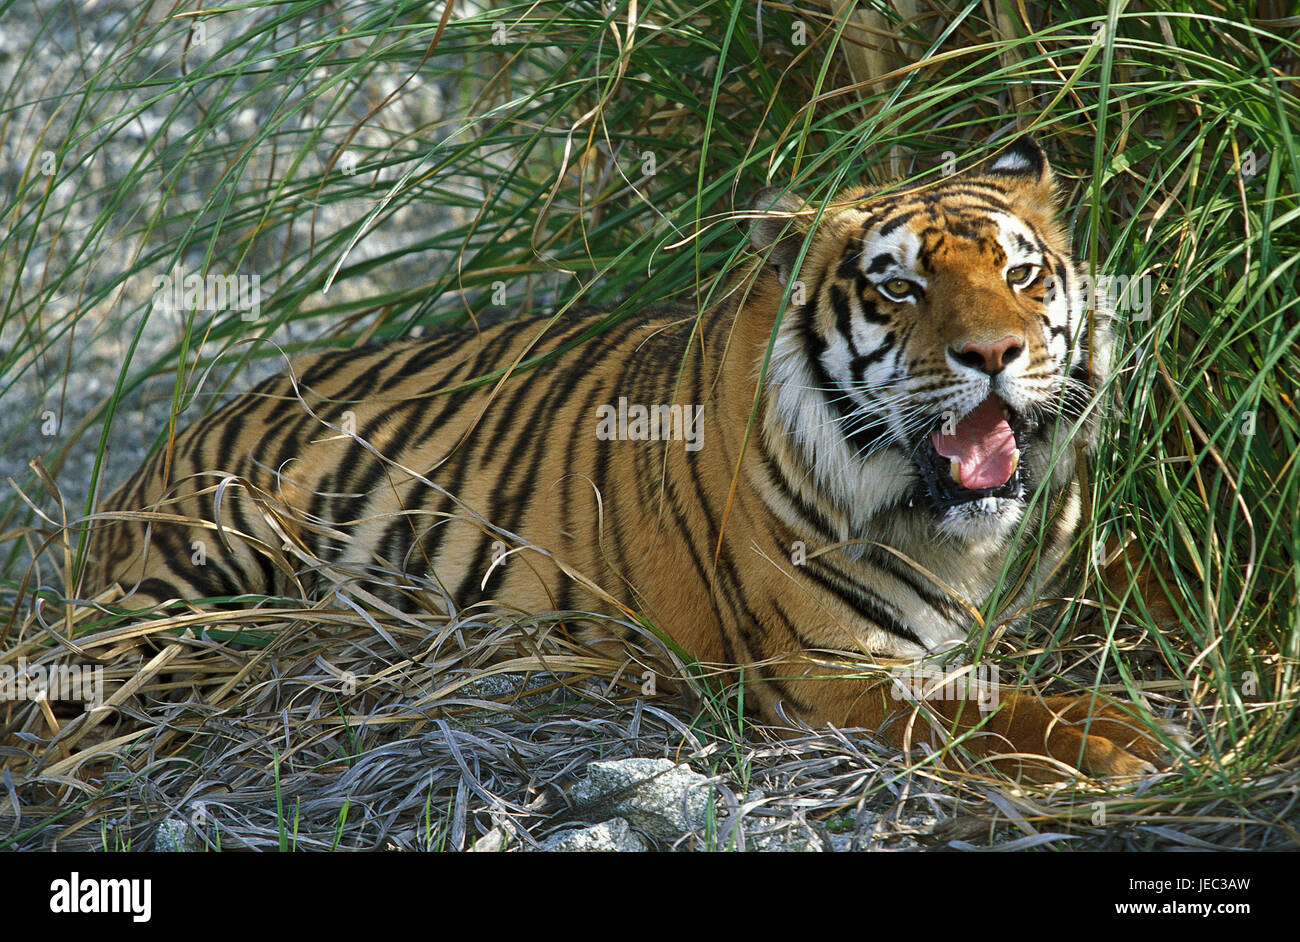 Siberian tiger, Panthera tigris altaica, Stock Photo